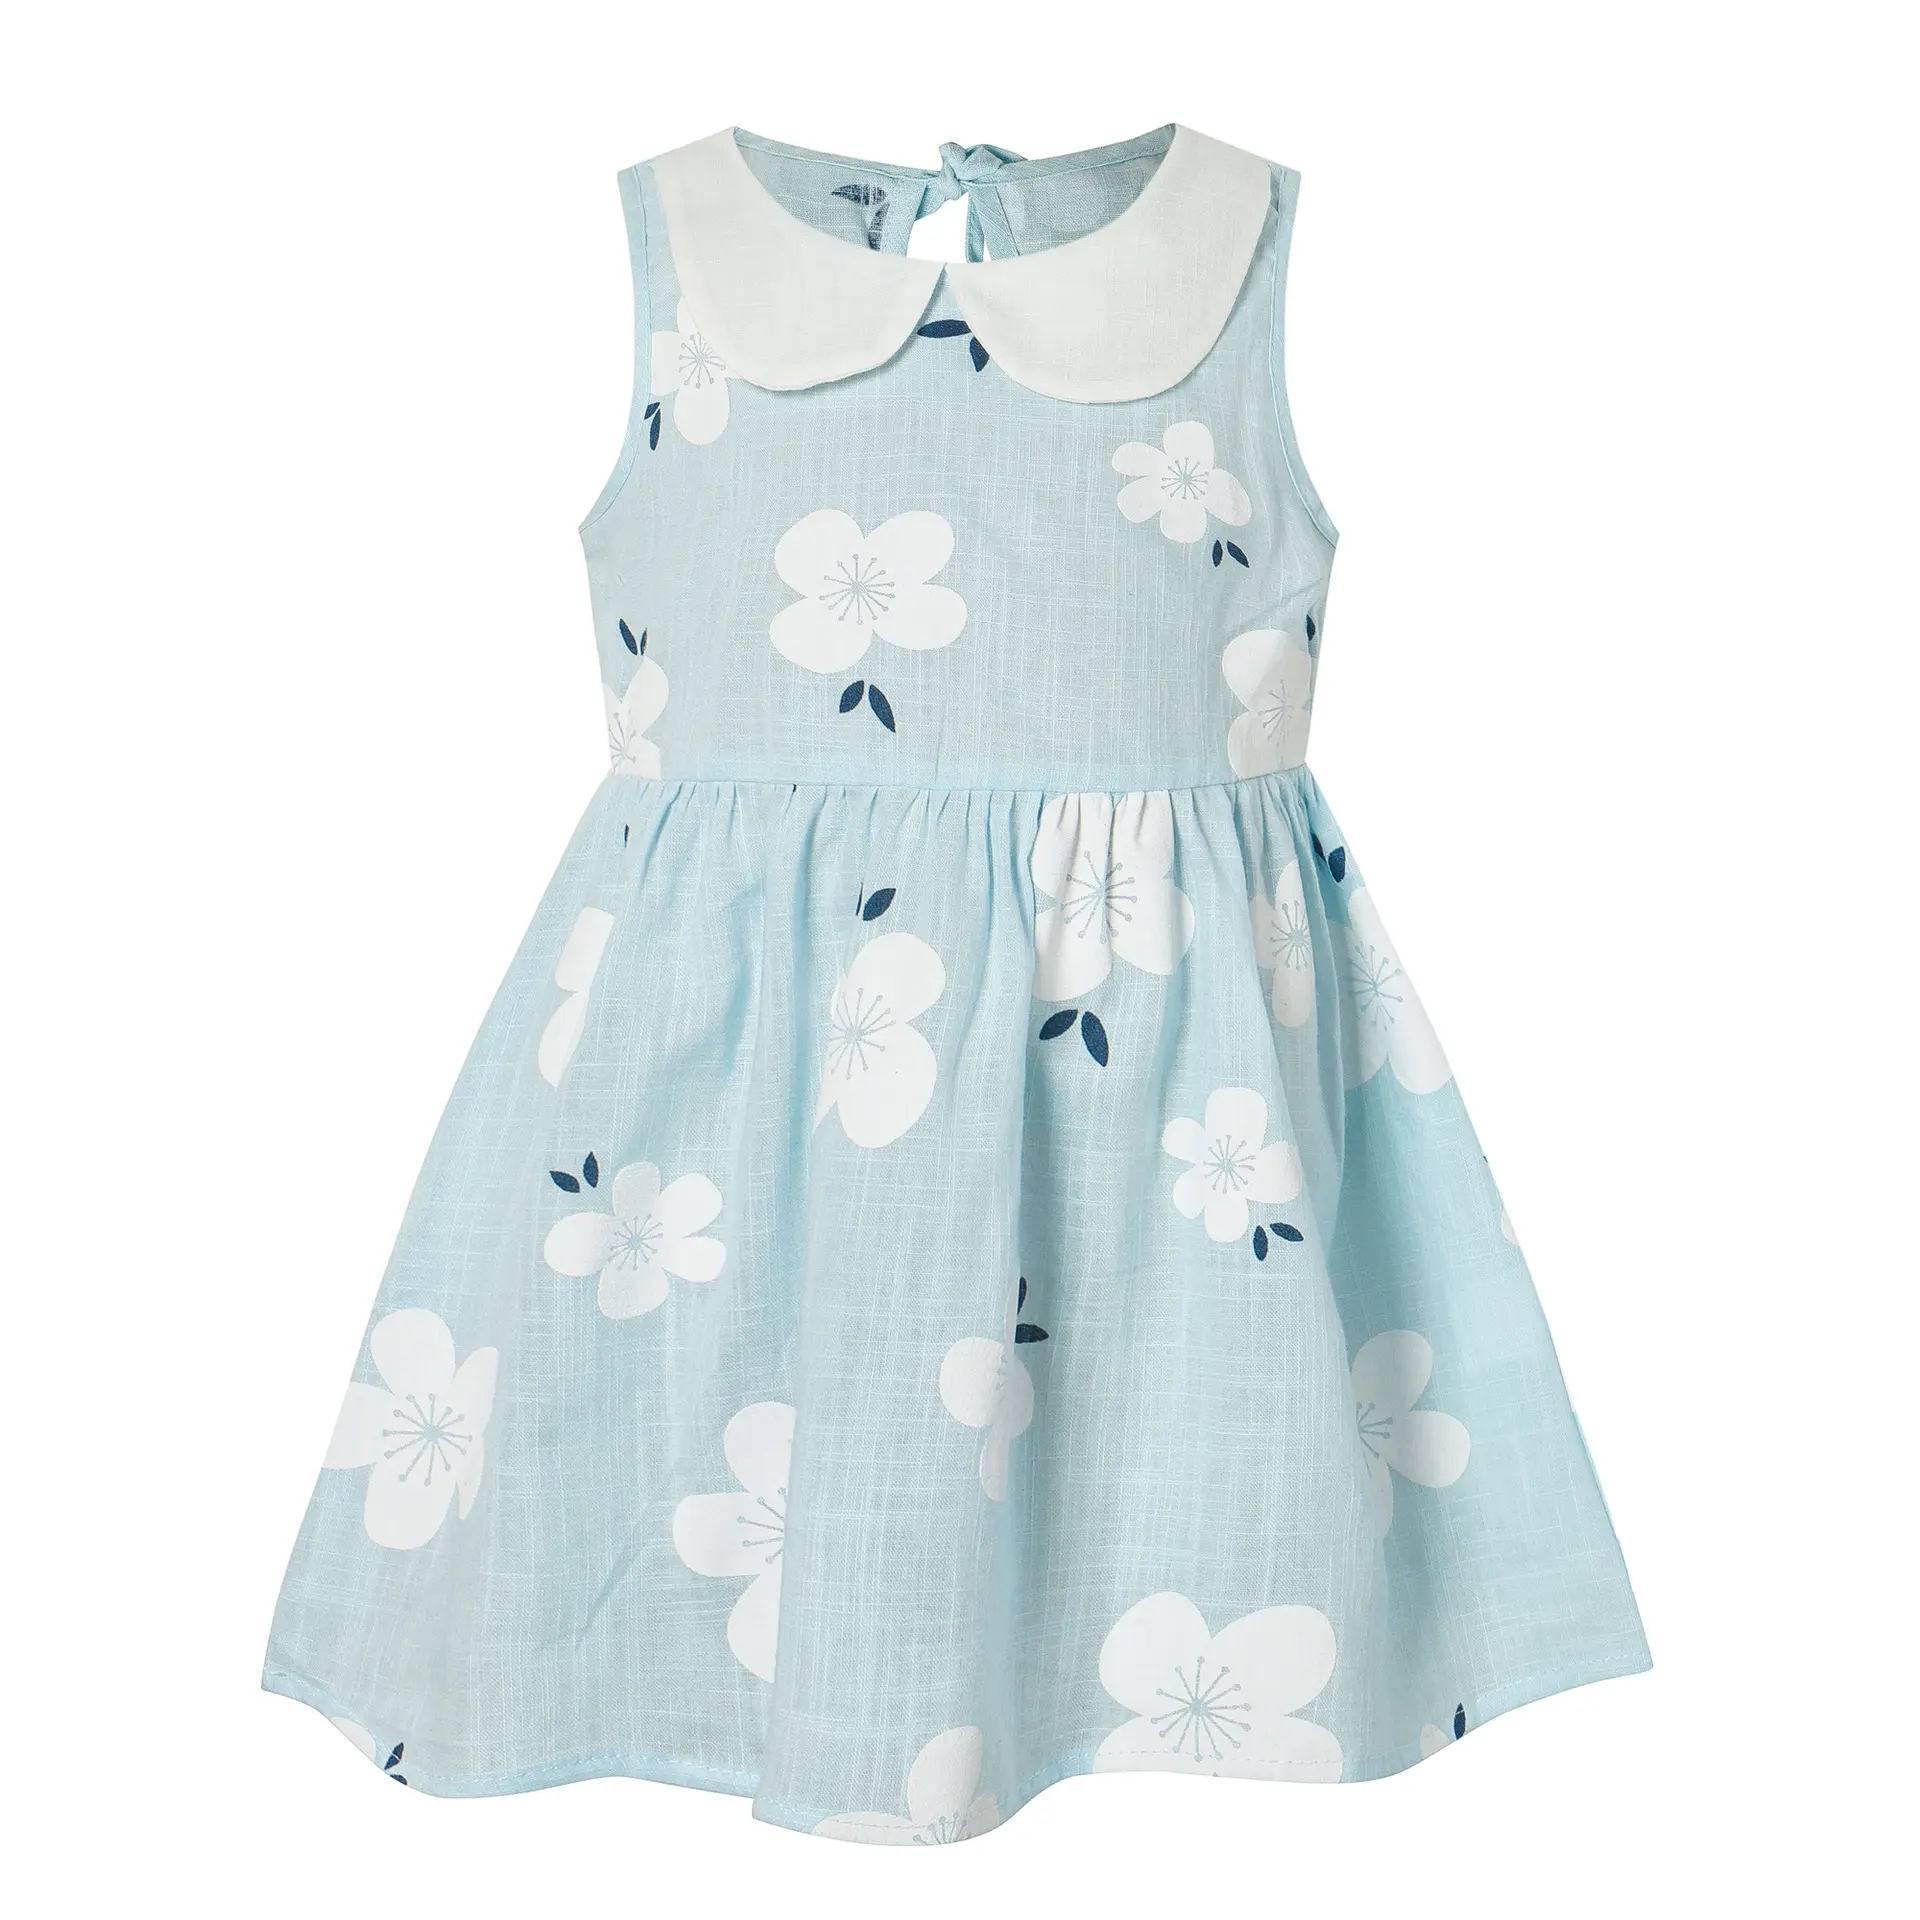 छोटे MOQ को सपोर्ट करें कस्टम छोटे आकार के बच्चों के लिए प्रिंटेड स्लीवलेस ड्रेस गर्ल फ्रॉक डिज़ाइन बच्चों के लिए सनफ्लावर फैंसी ड्रेस